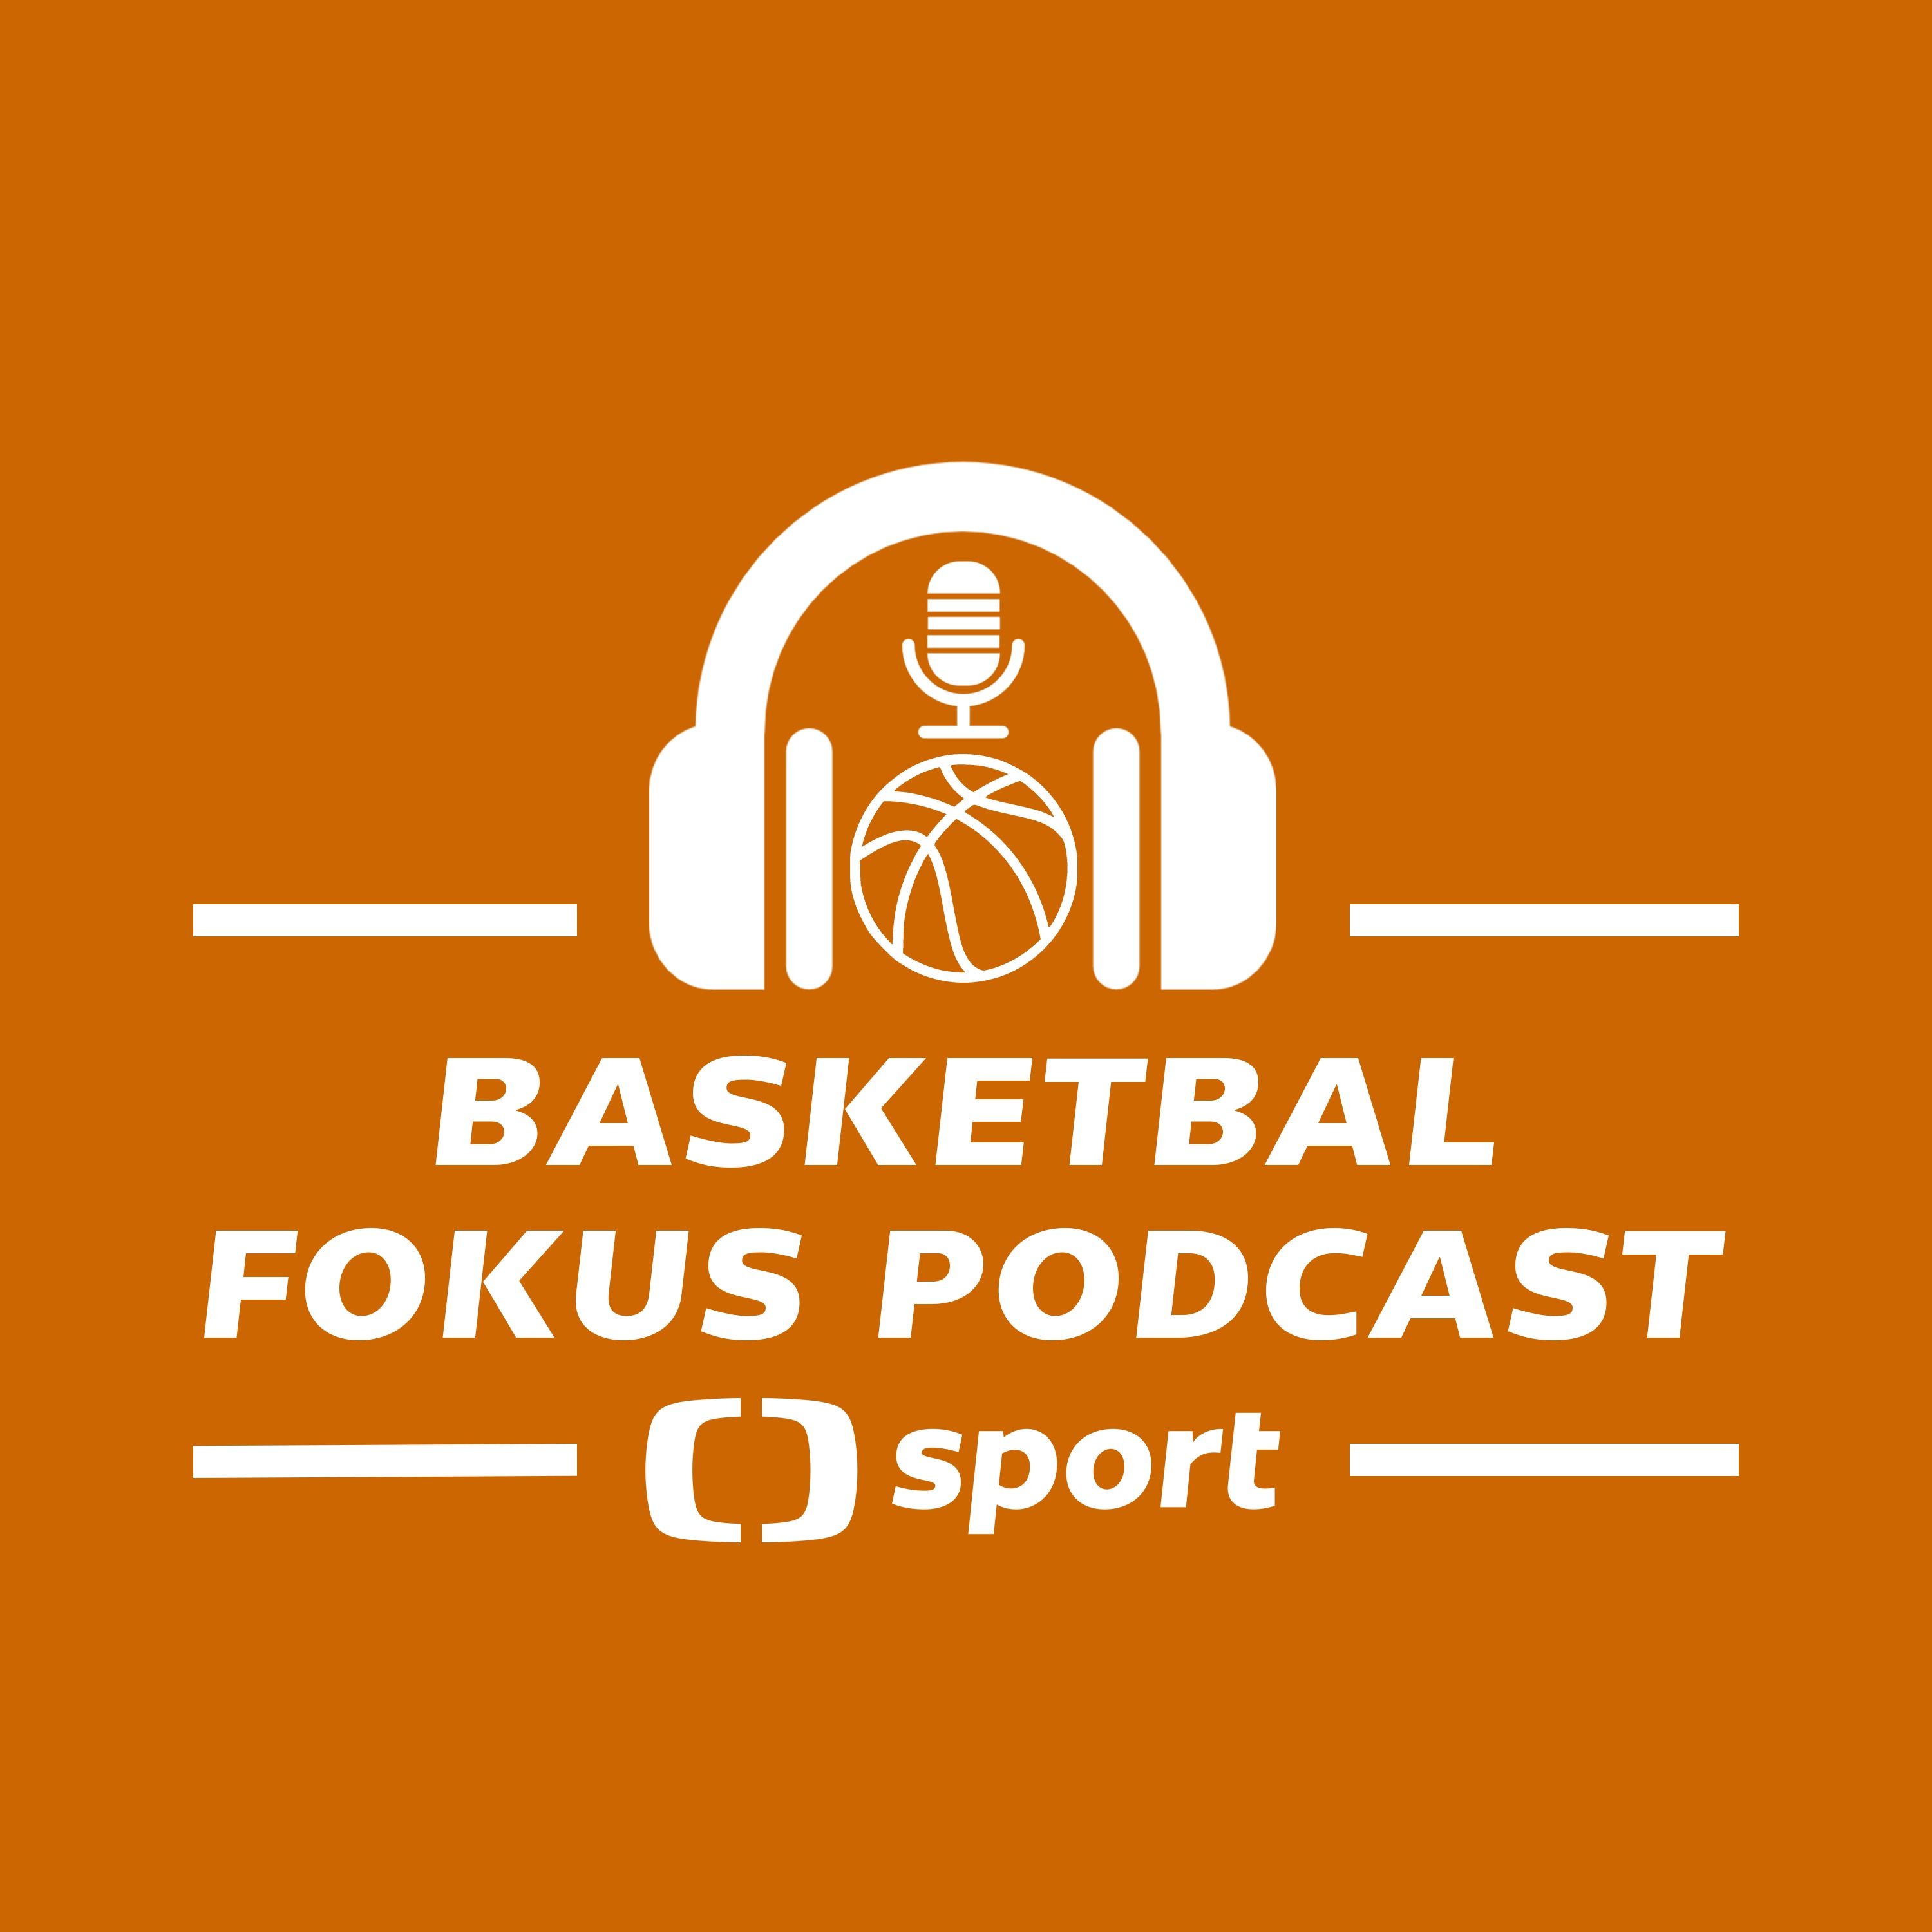 Basketbal fokus podcast: S Jiřím Zídkem o Eurobasketu, Eurolize a vzpomínkách na NBA